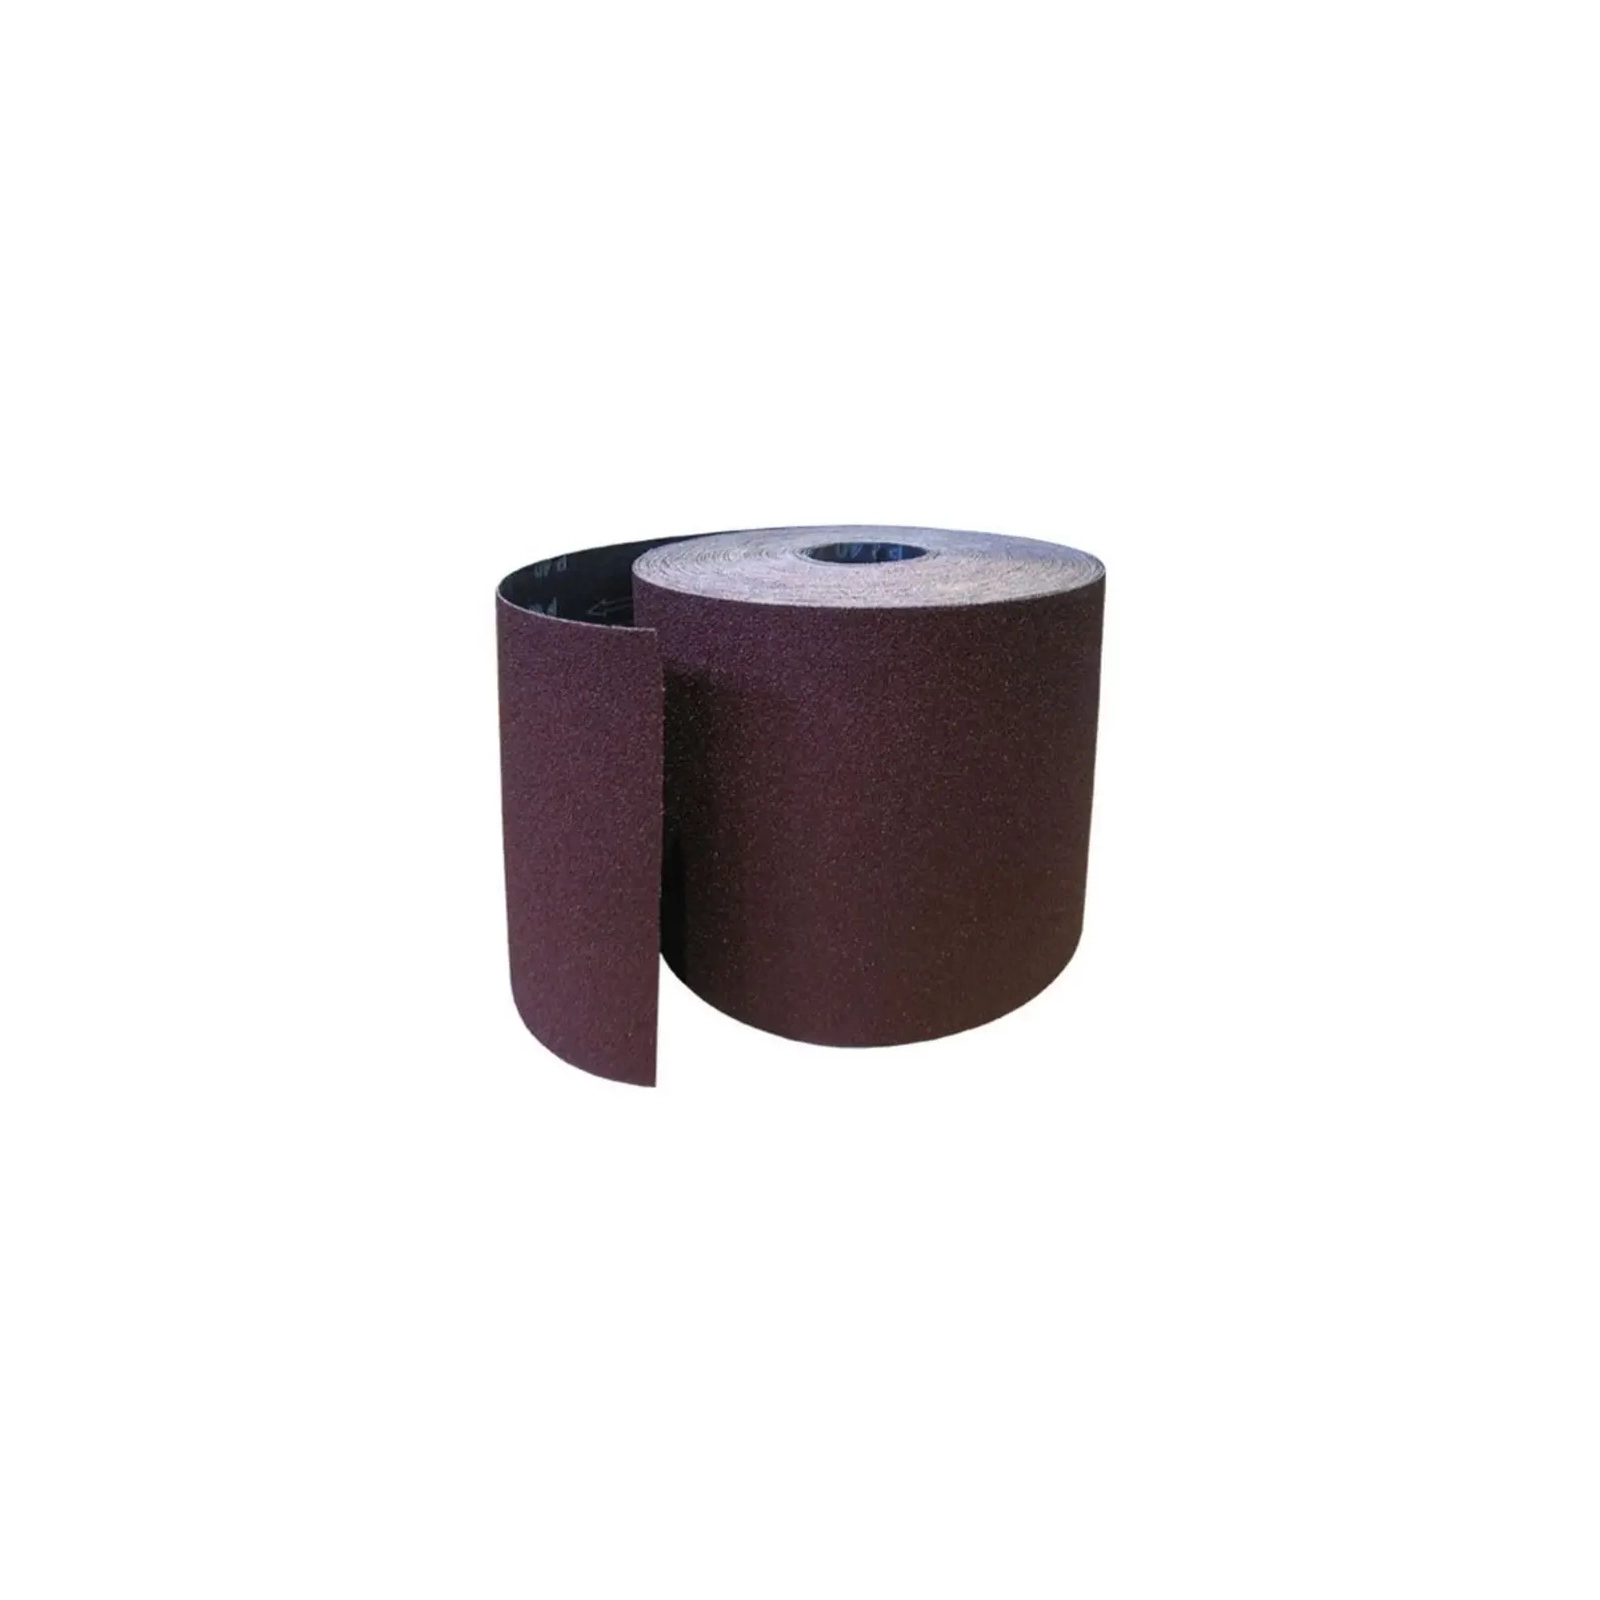 Наждачная бумага HAISSER бумажная основа – 115мм x 5м, зерно 120 (118533)